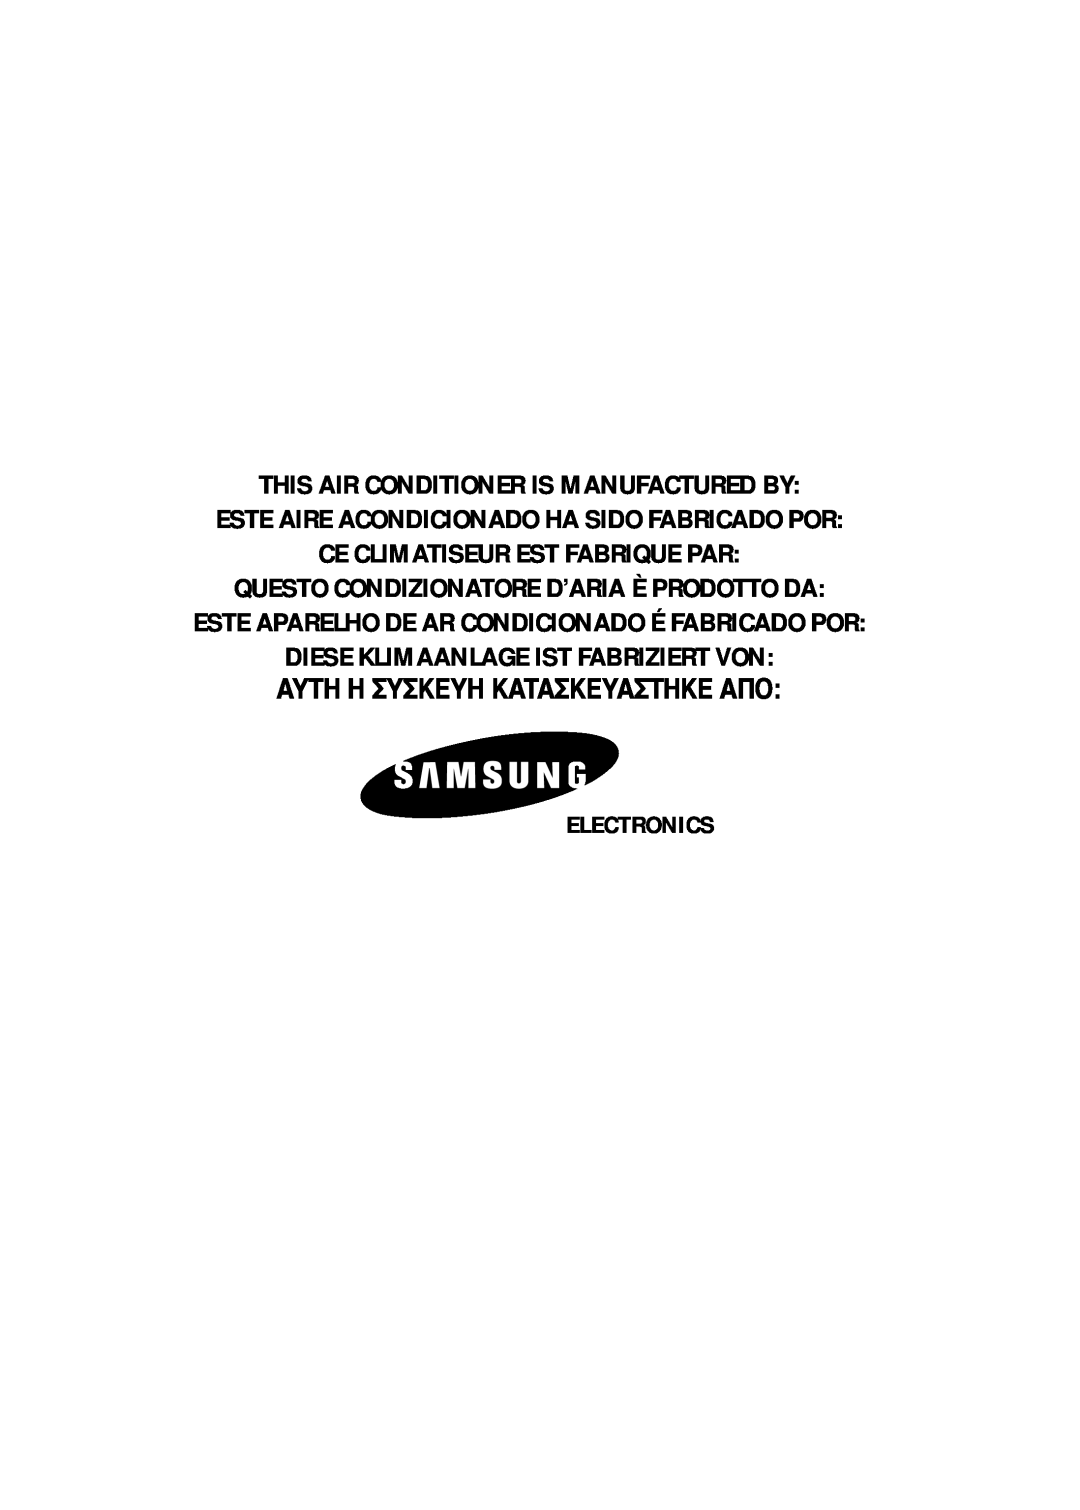 Samsung SH07APG Electronics, This Air Conditioner Is Manufactured By, Este Aire Acondicionado Ha Sido Fabricado Por 